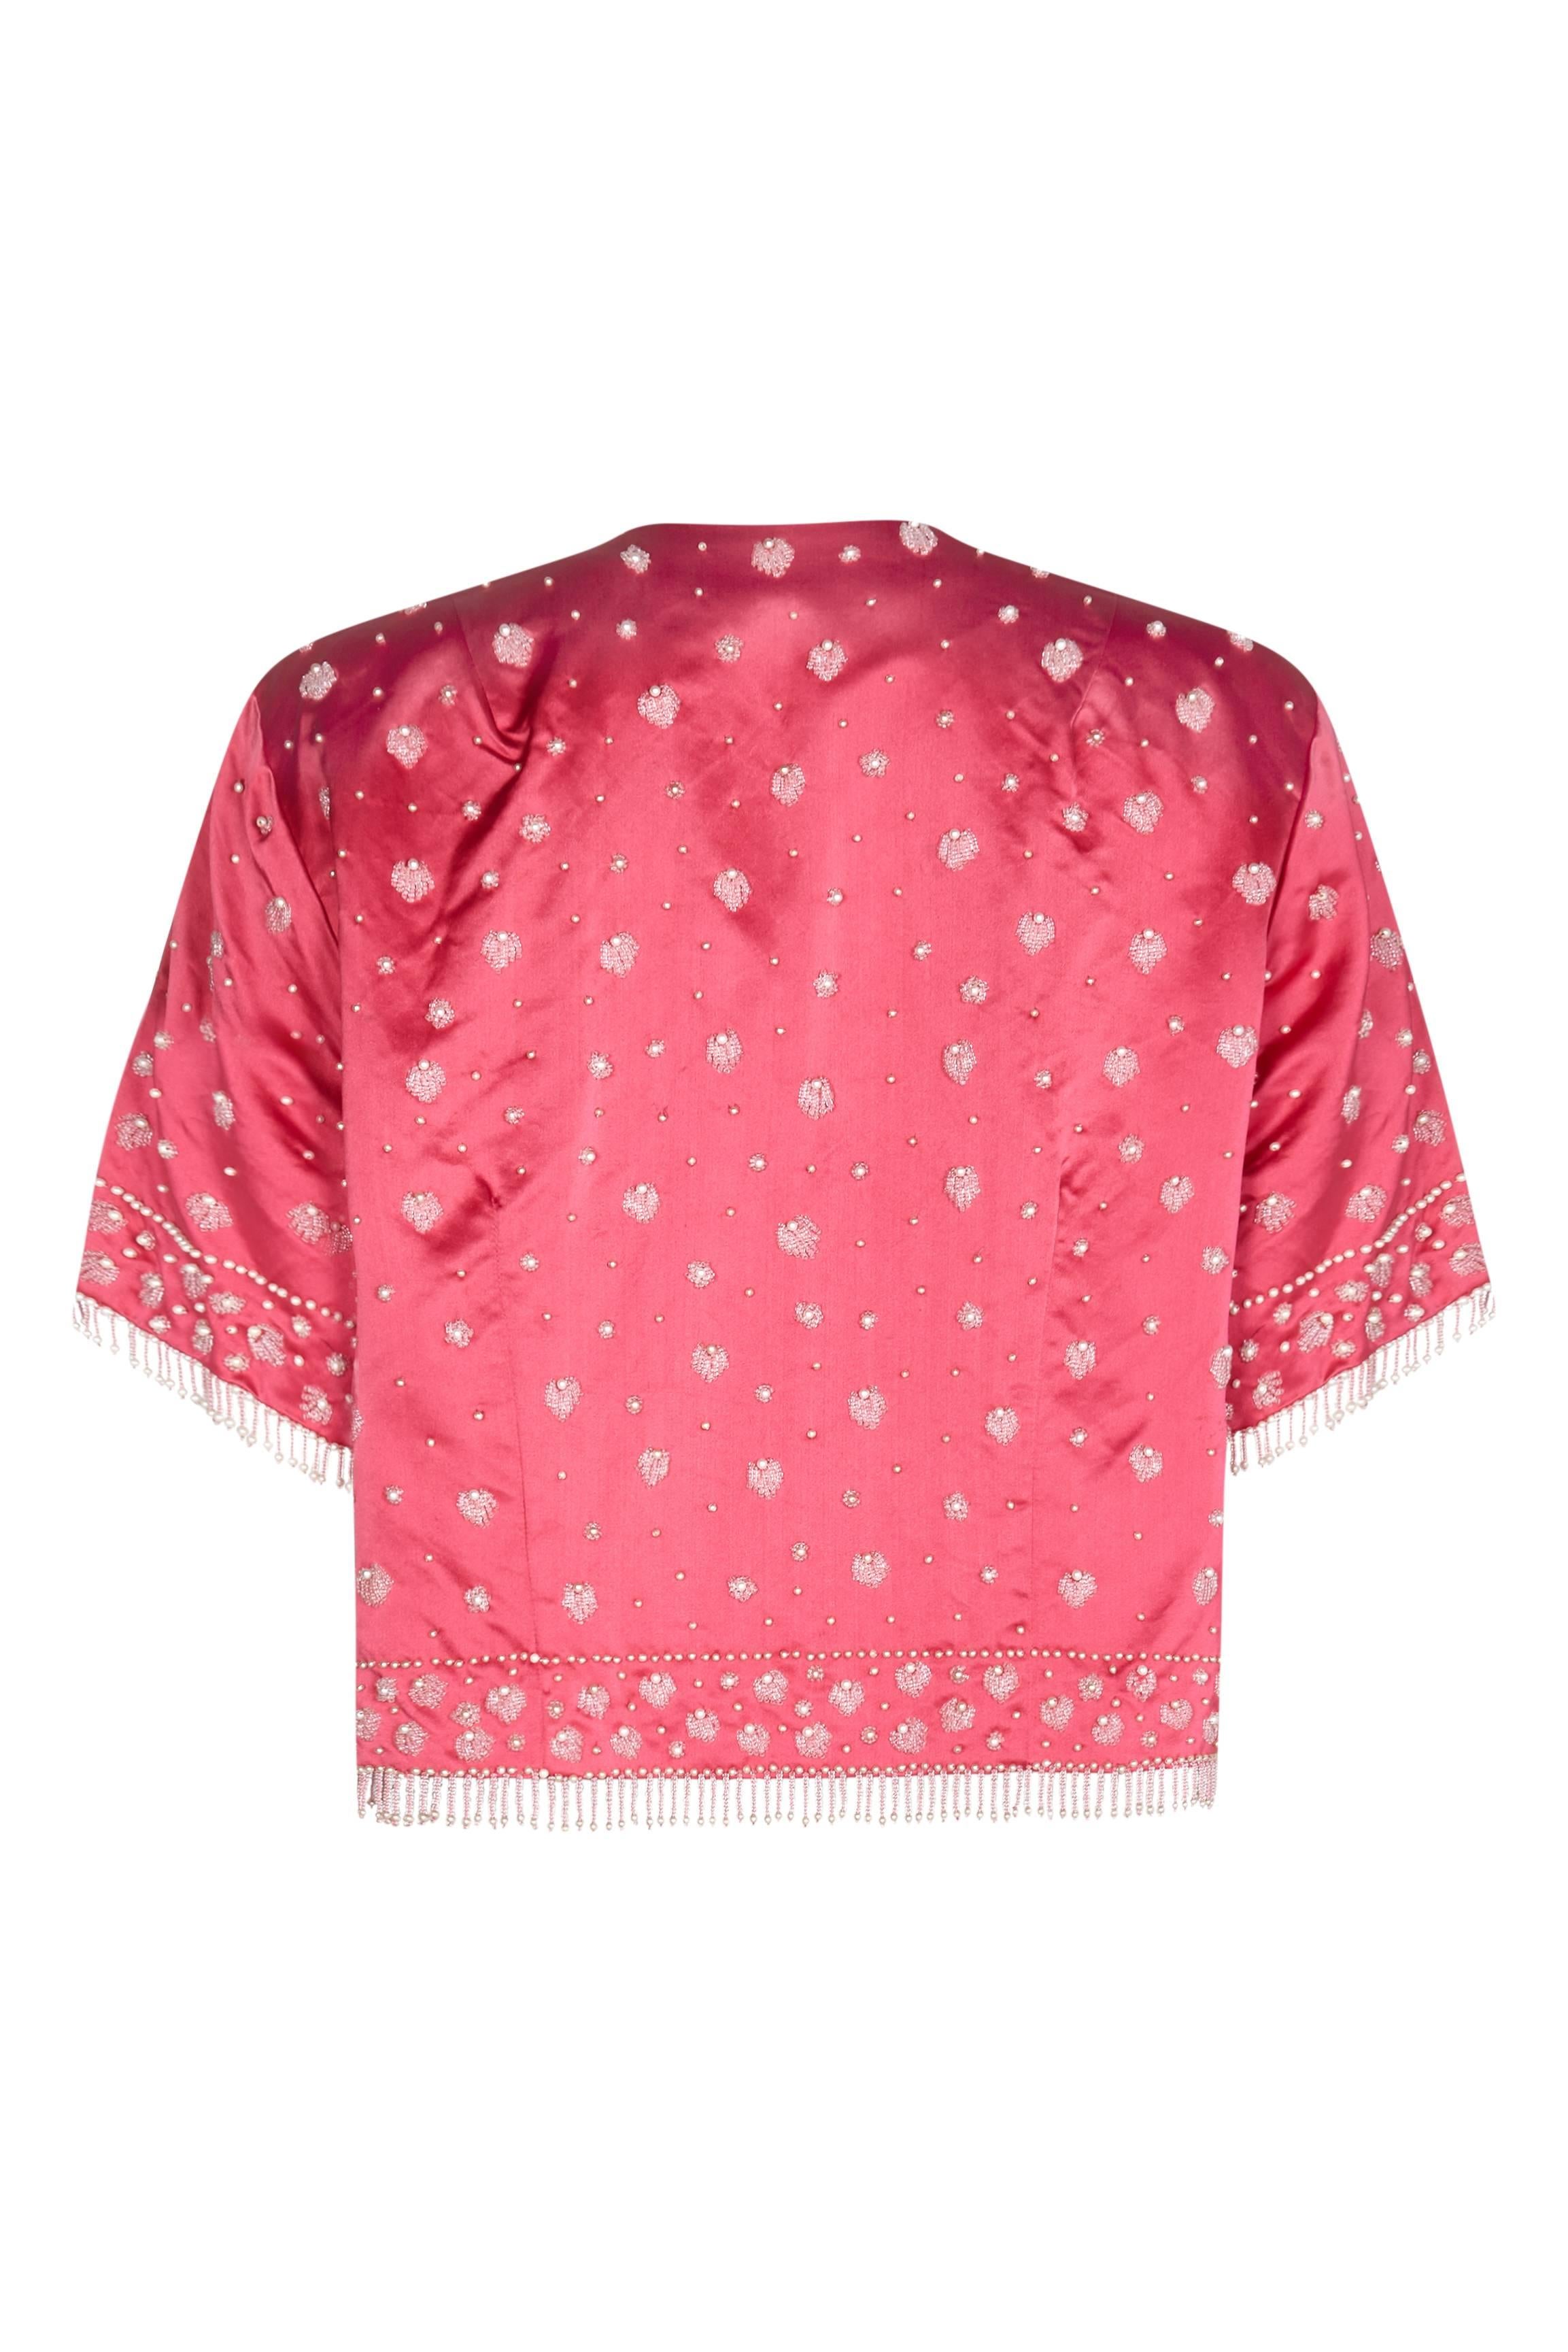 Cette charmante veste de soirée en soie des années 1950, ornée de perles, porte l'étiquette de Cavanagh's de St Thomas, dans les îles Vierges, qui aurait été la boutique de référence de cette destination glamour à cette époque. La veste, qui va